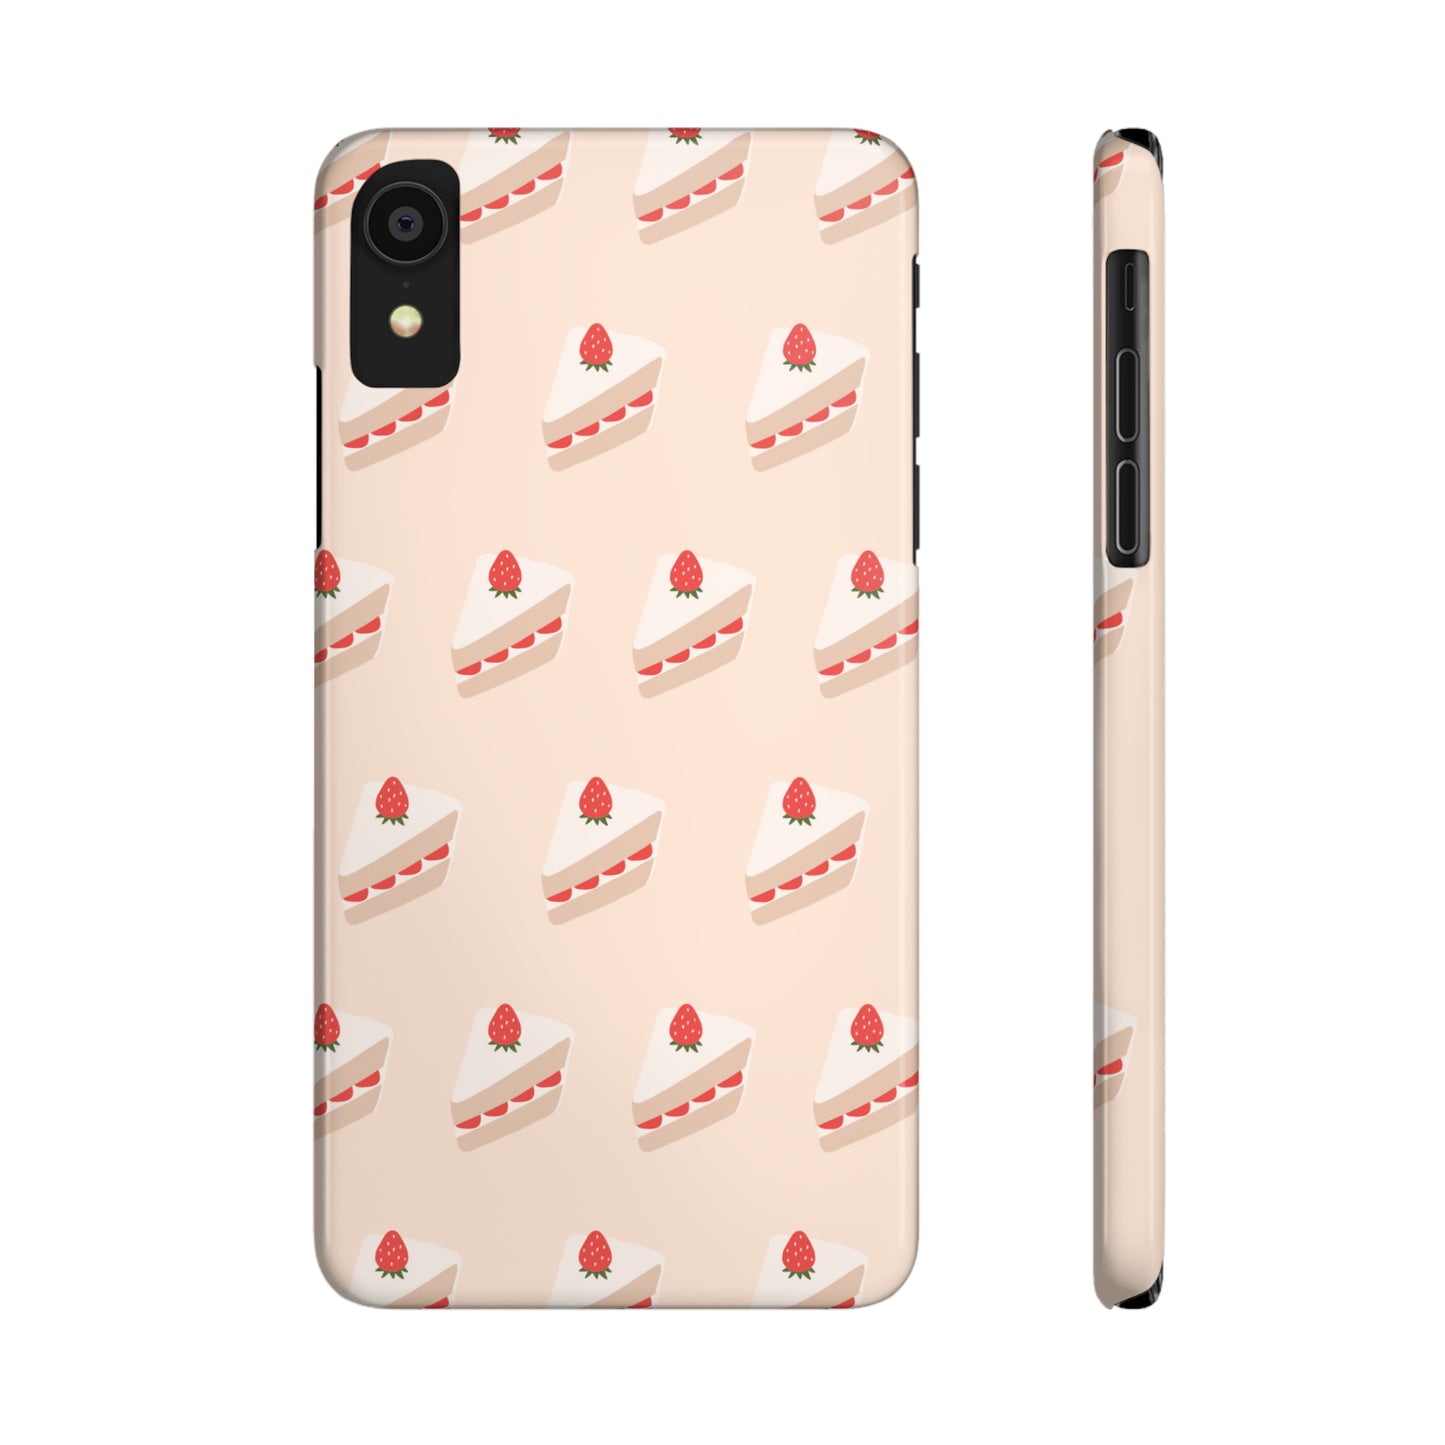 Strawberry Shortcake Slim Phone Cases